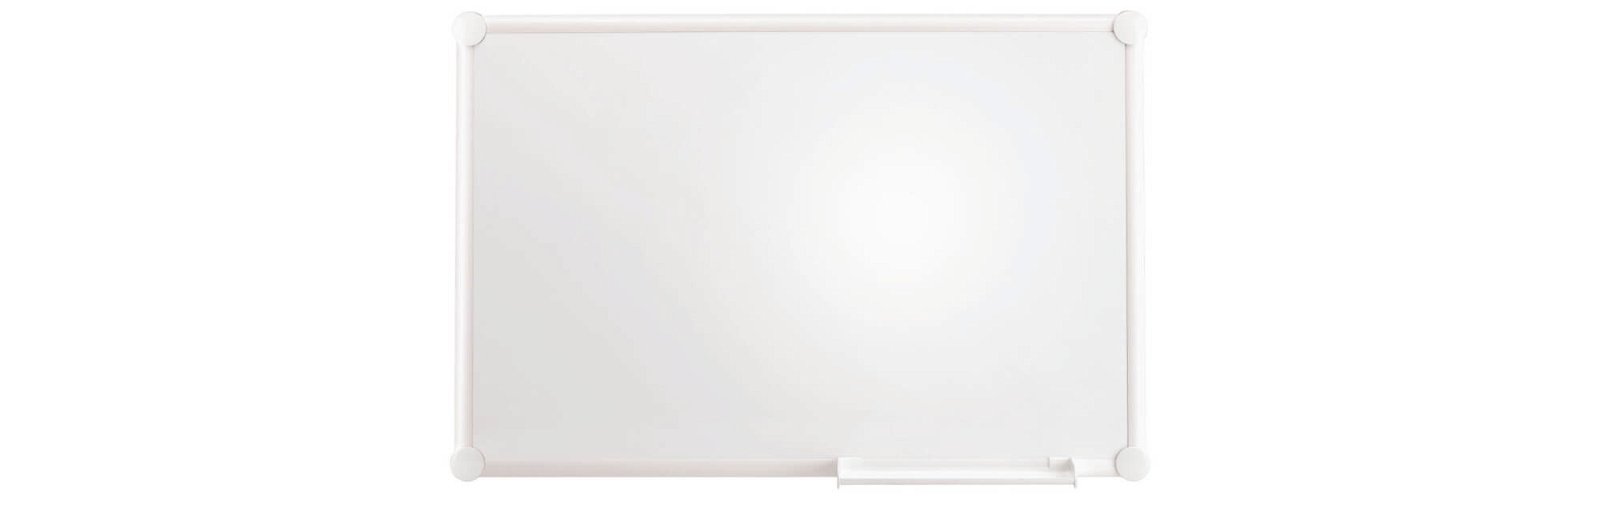 Whiteboard 2000 MAULpro, -white-, 90x120 cm, weiß